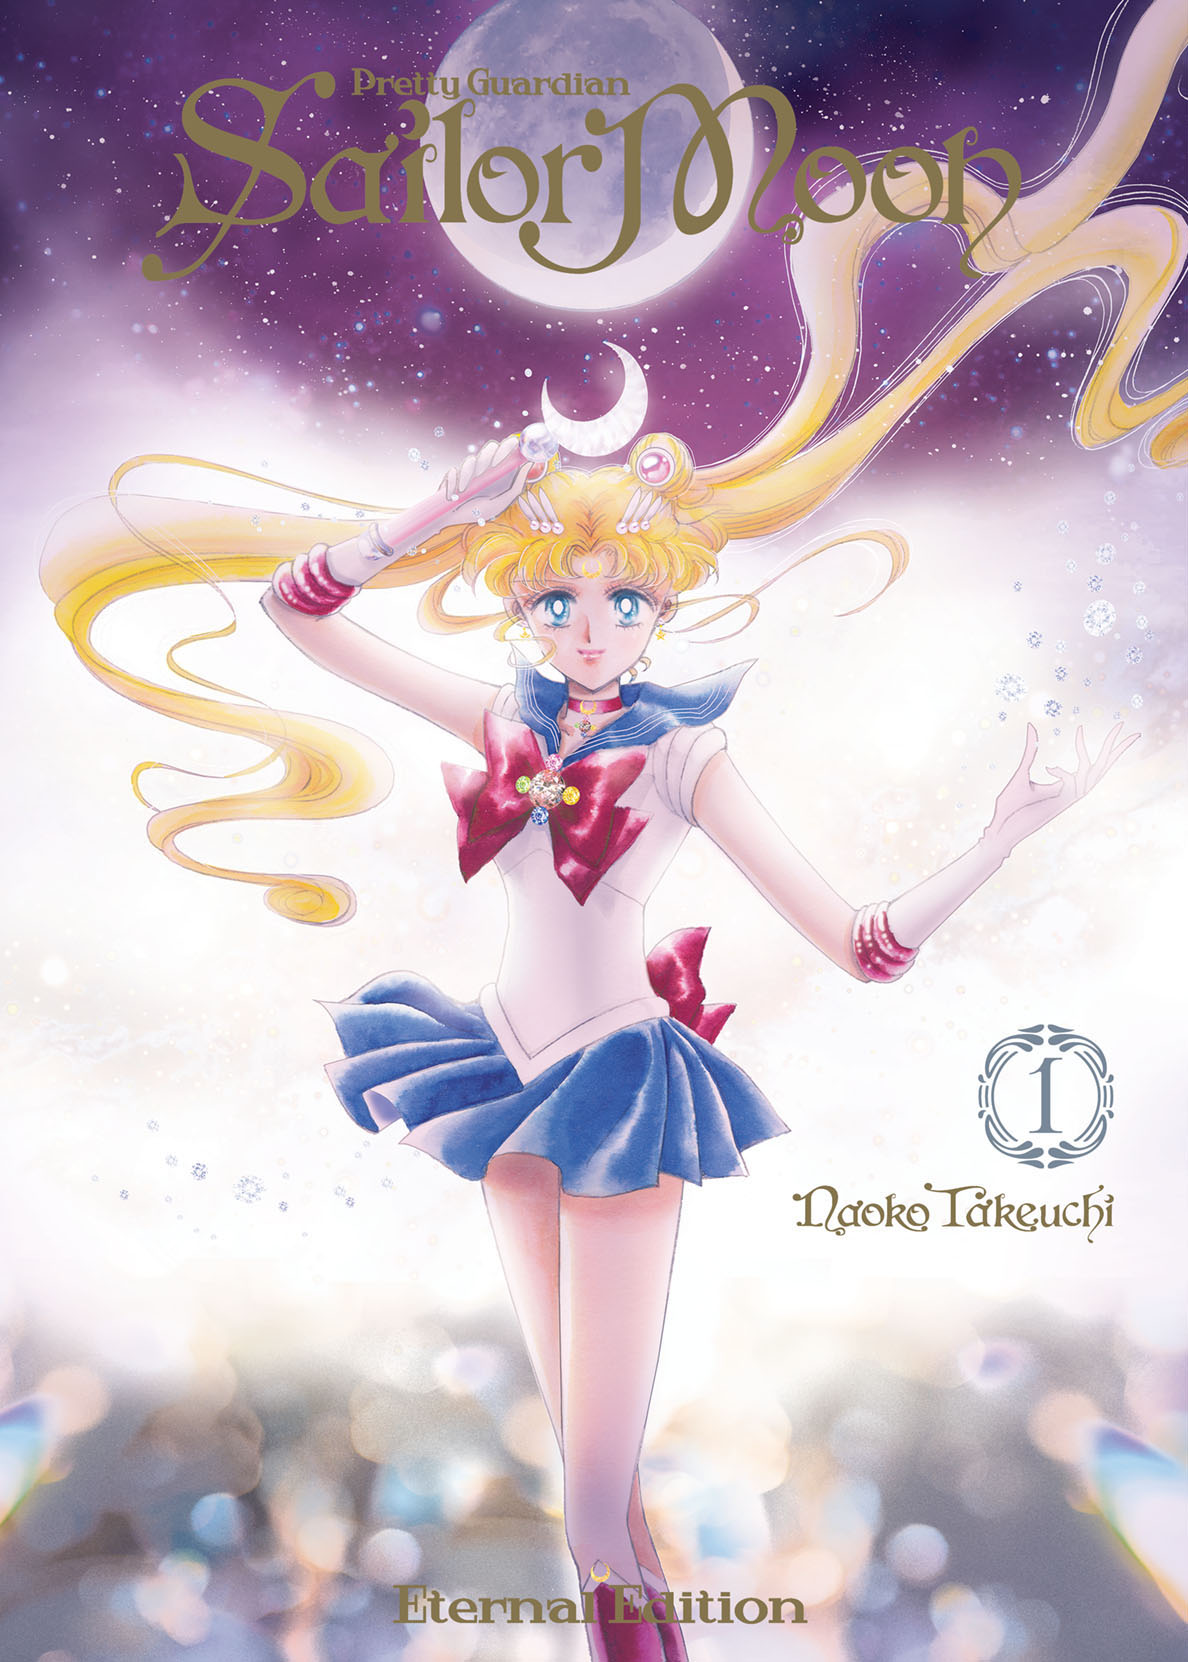 Sailor Moon Eternal Edition